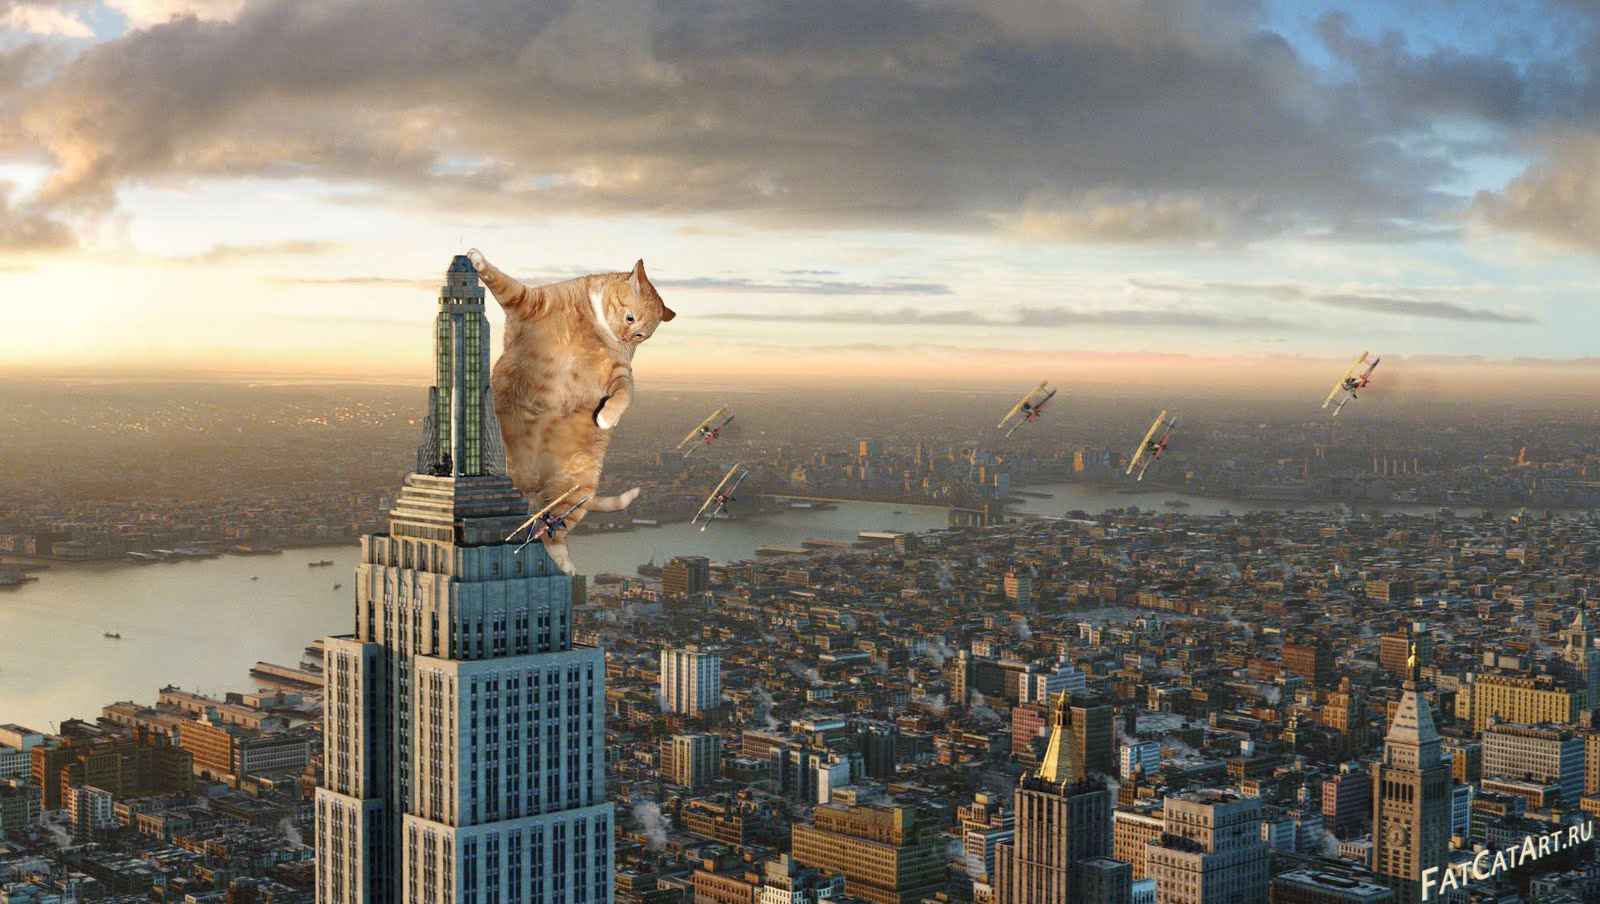 https://fatcatart.com/wp-content/uploads/2014/03/King-Kong-2005-cat-w.jpg